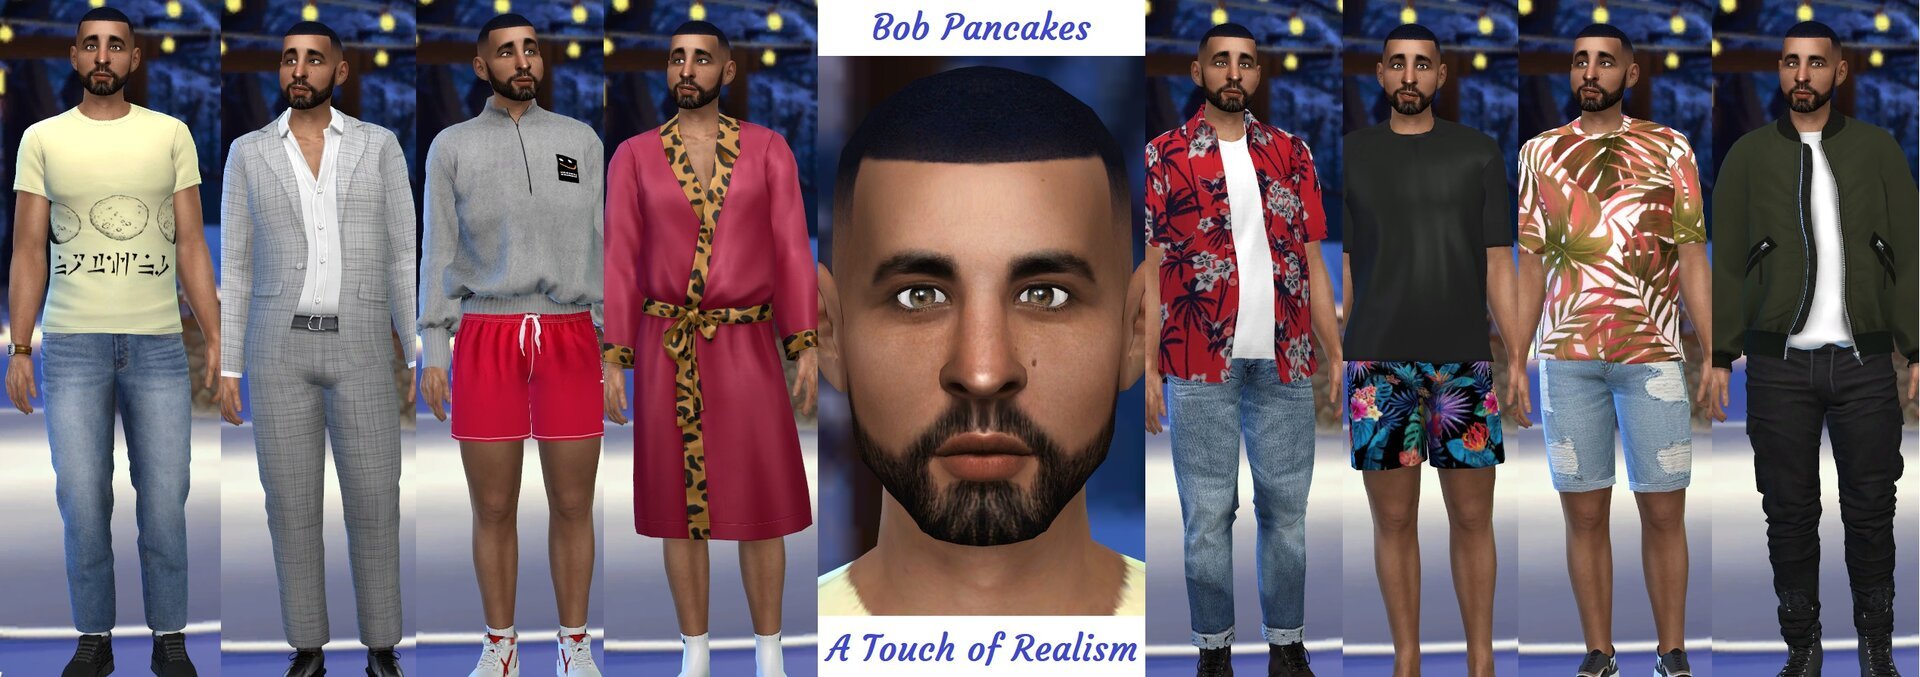 Bob Pancakes2.jpg